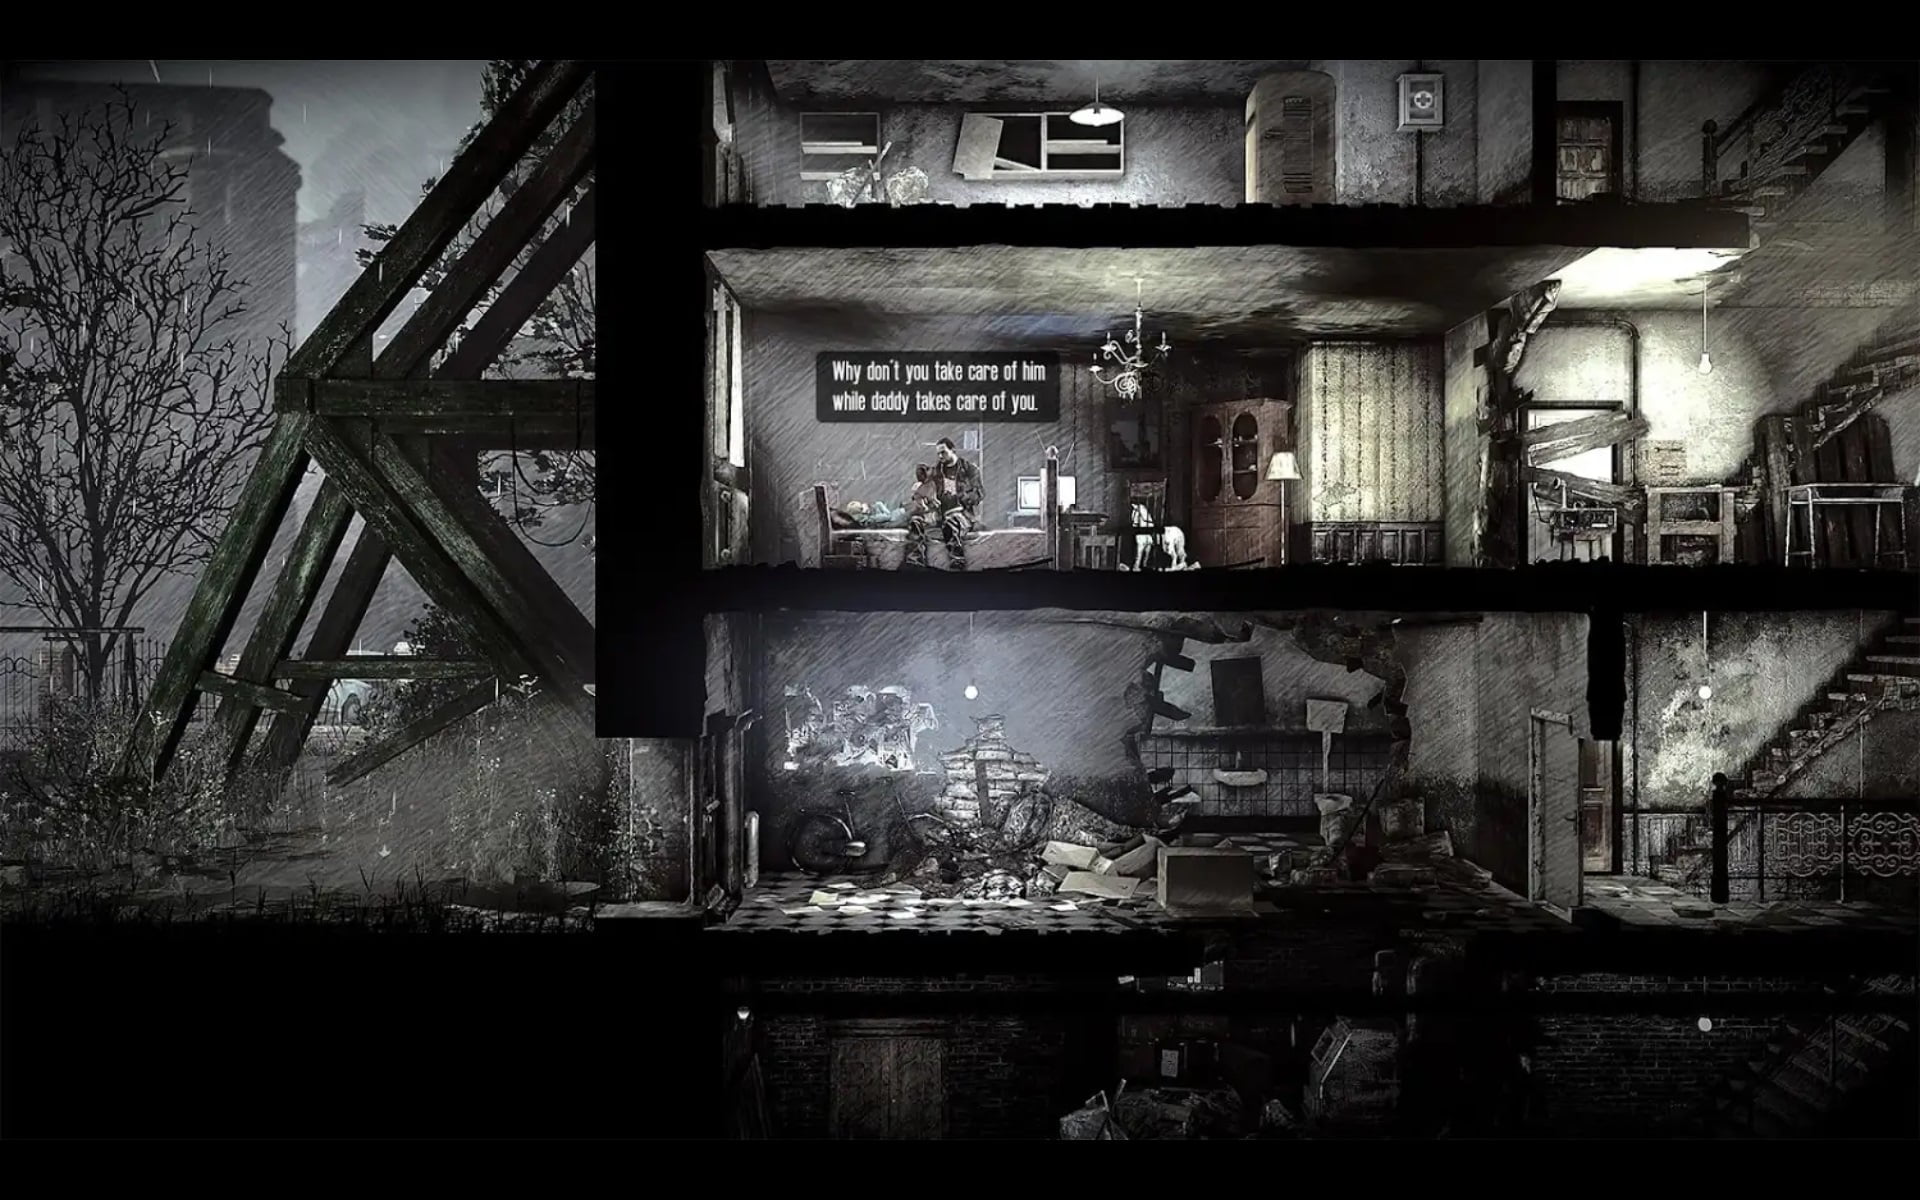 Przekrój przez zrujnowany budynek pokazujący trzy piętra; postacie w środkowym piętrze z dialogiem w komiksowym stylu w tle; atmosfera ponura i postapokaliptyczna.